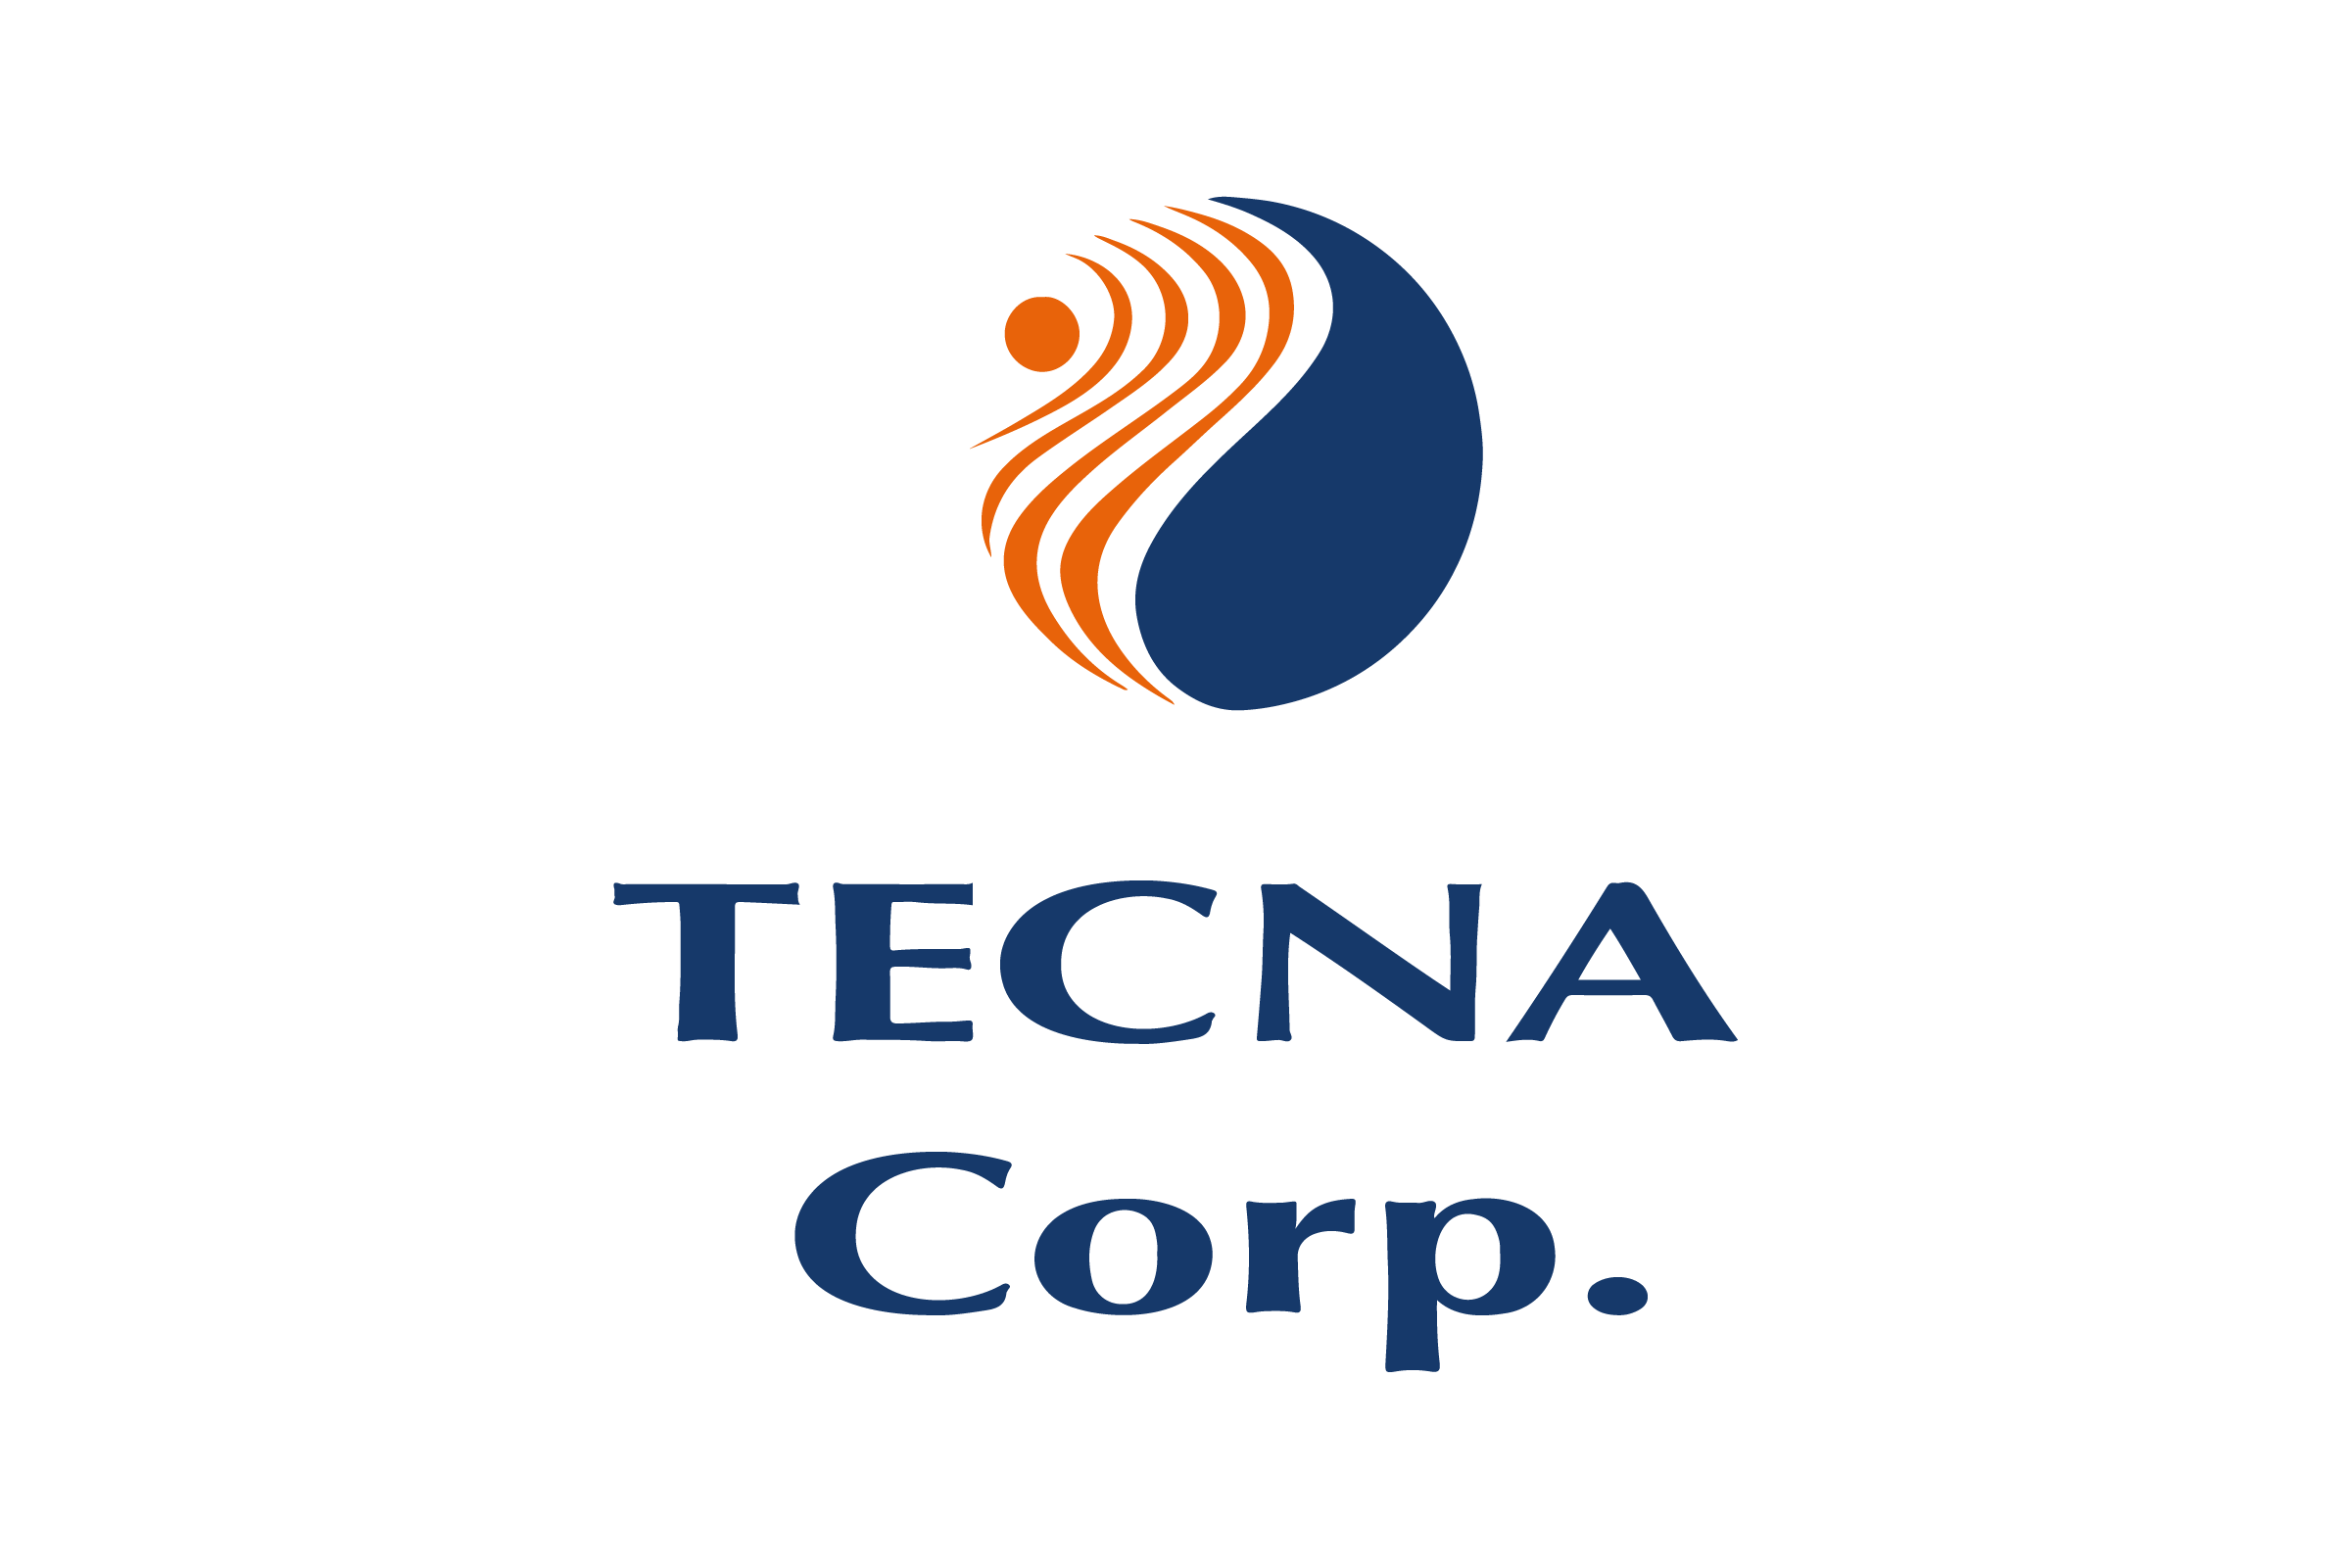 Tecna Corp.